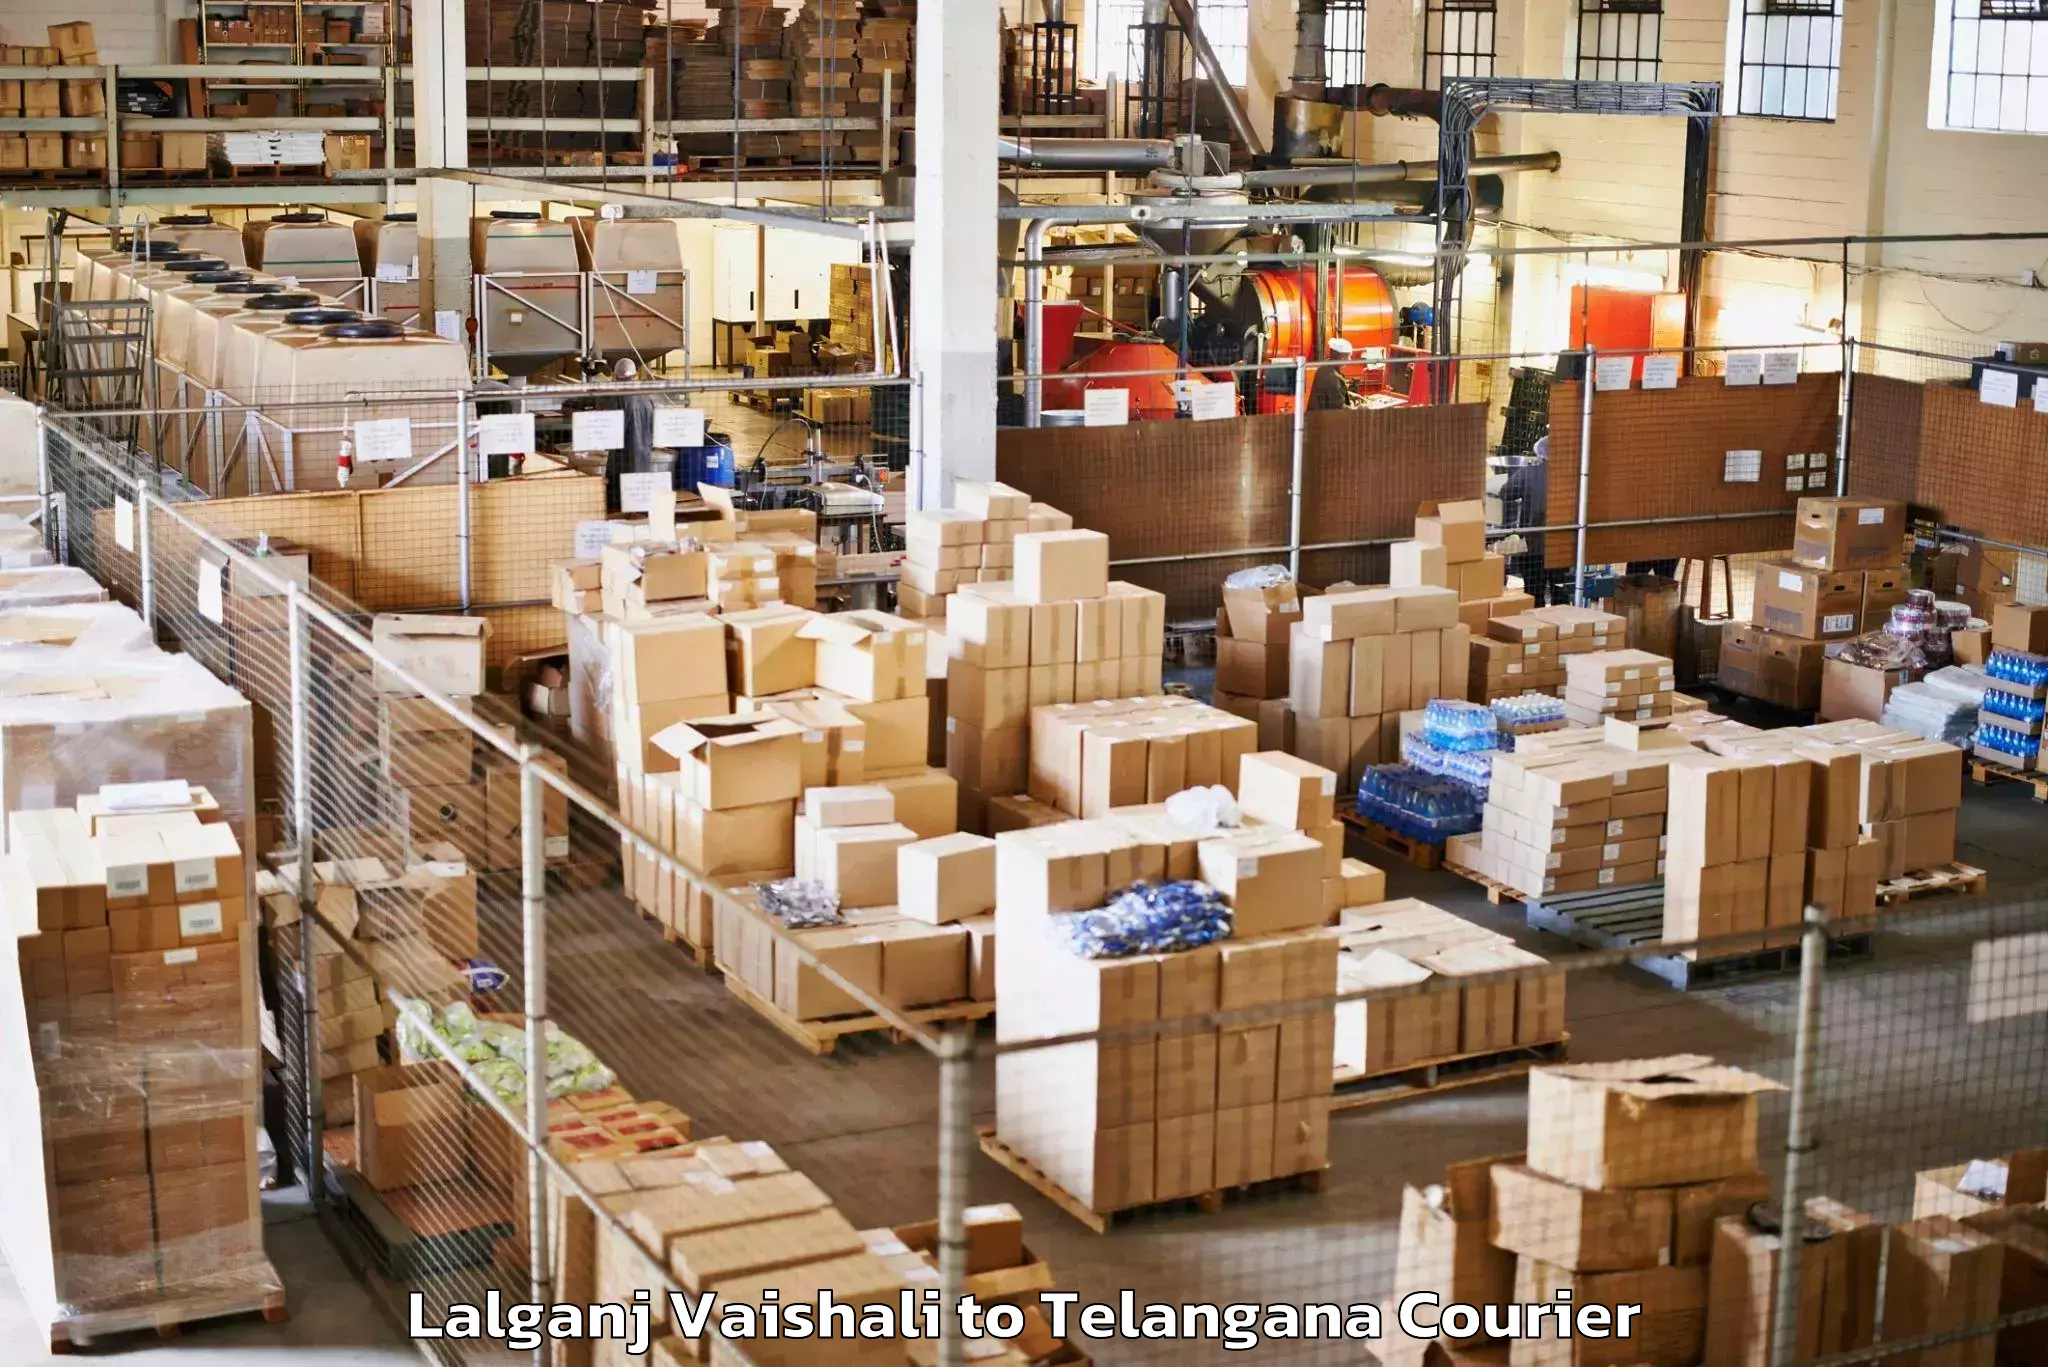 Luggage shipment logistics Lalganj Vaishali to Tallada